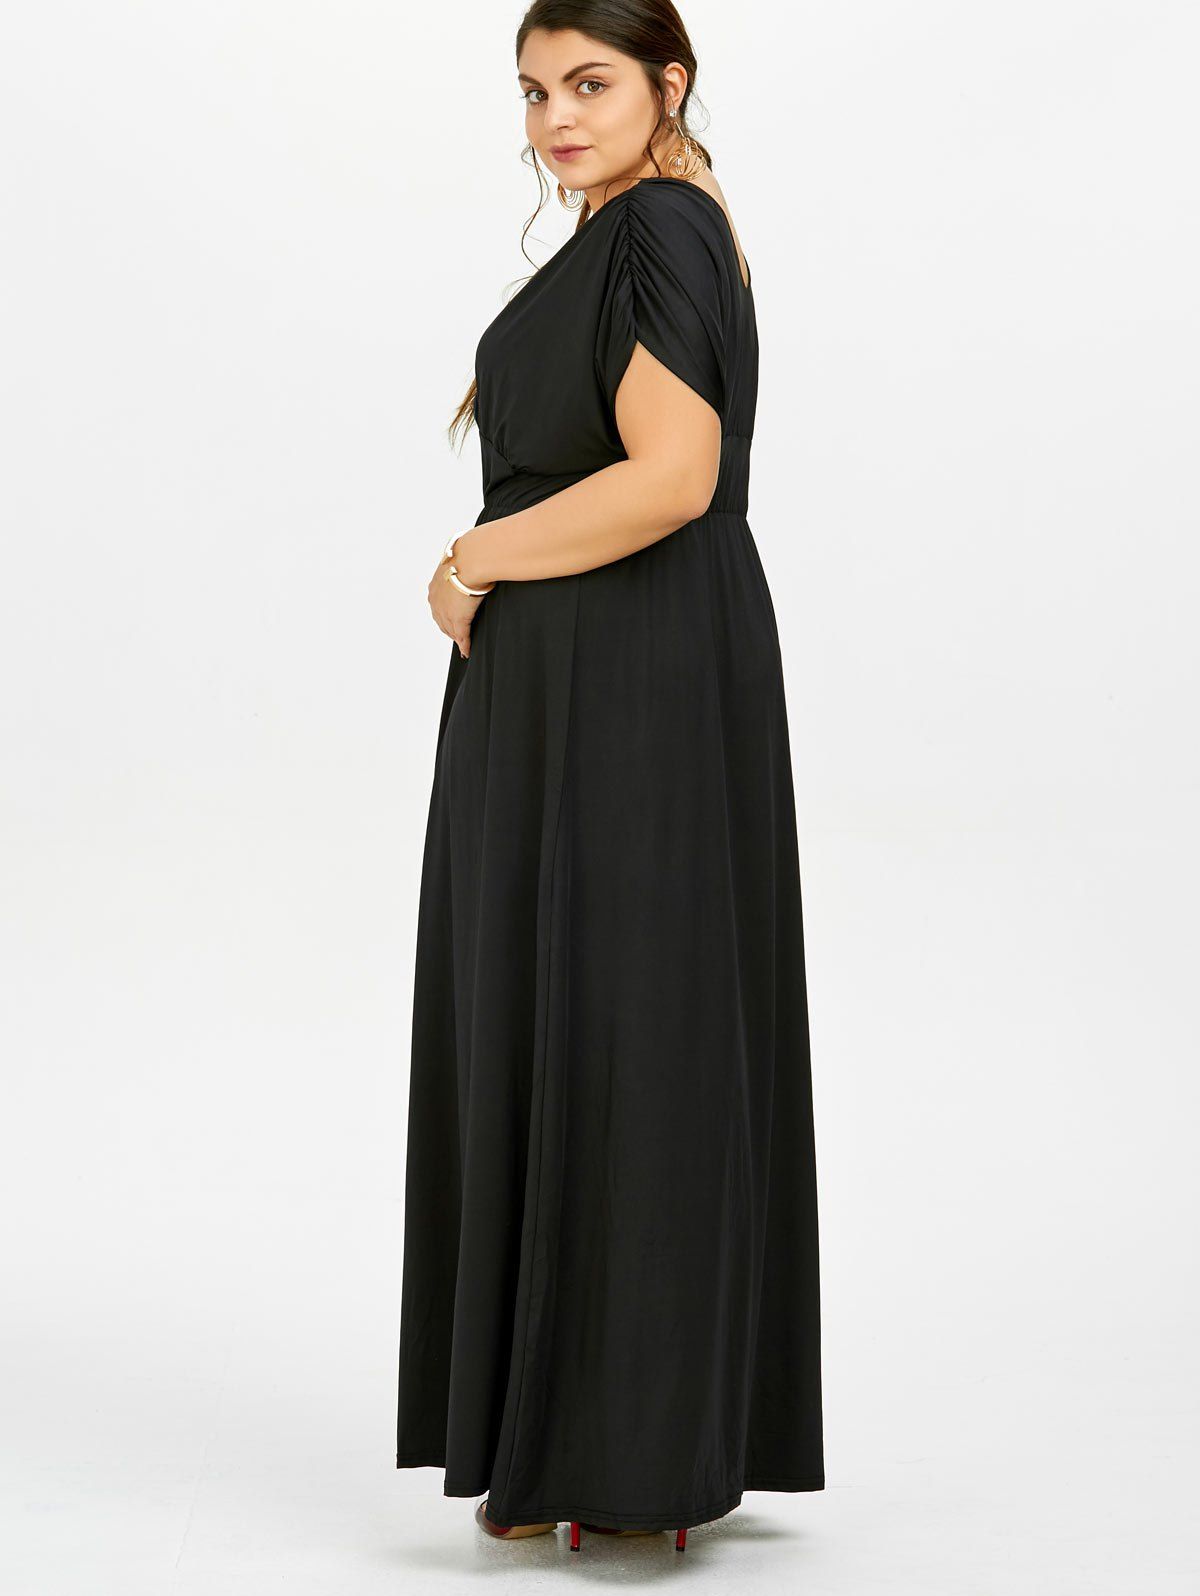 empire waist black dress